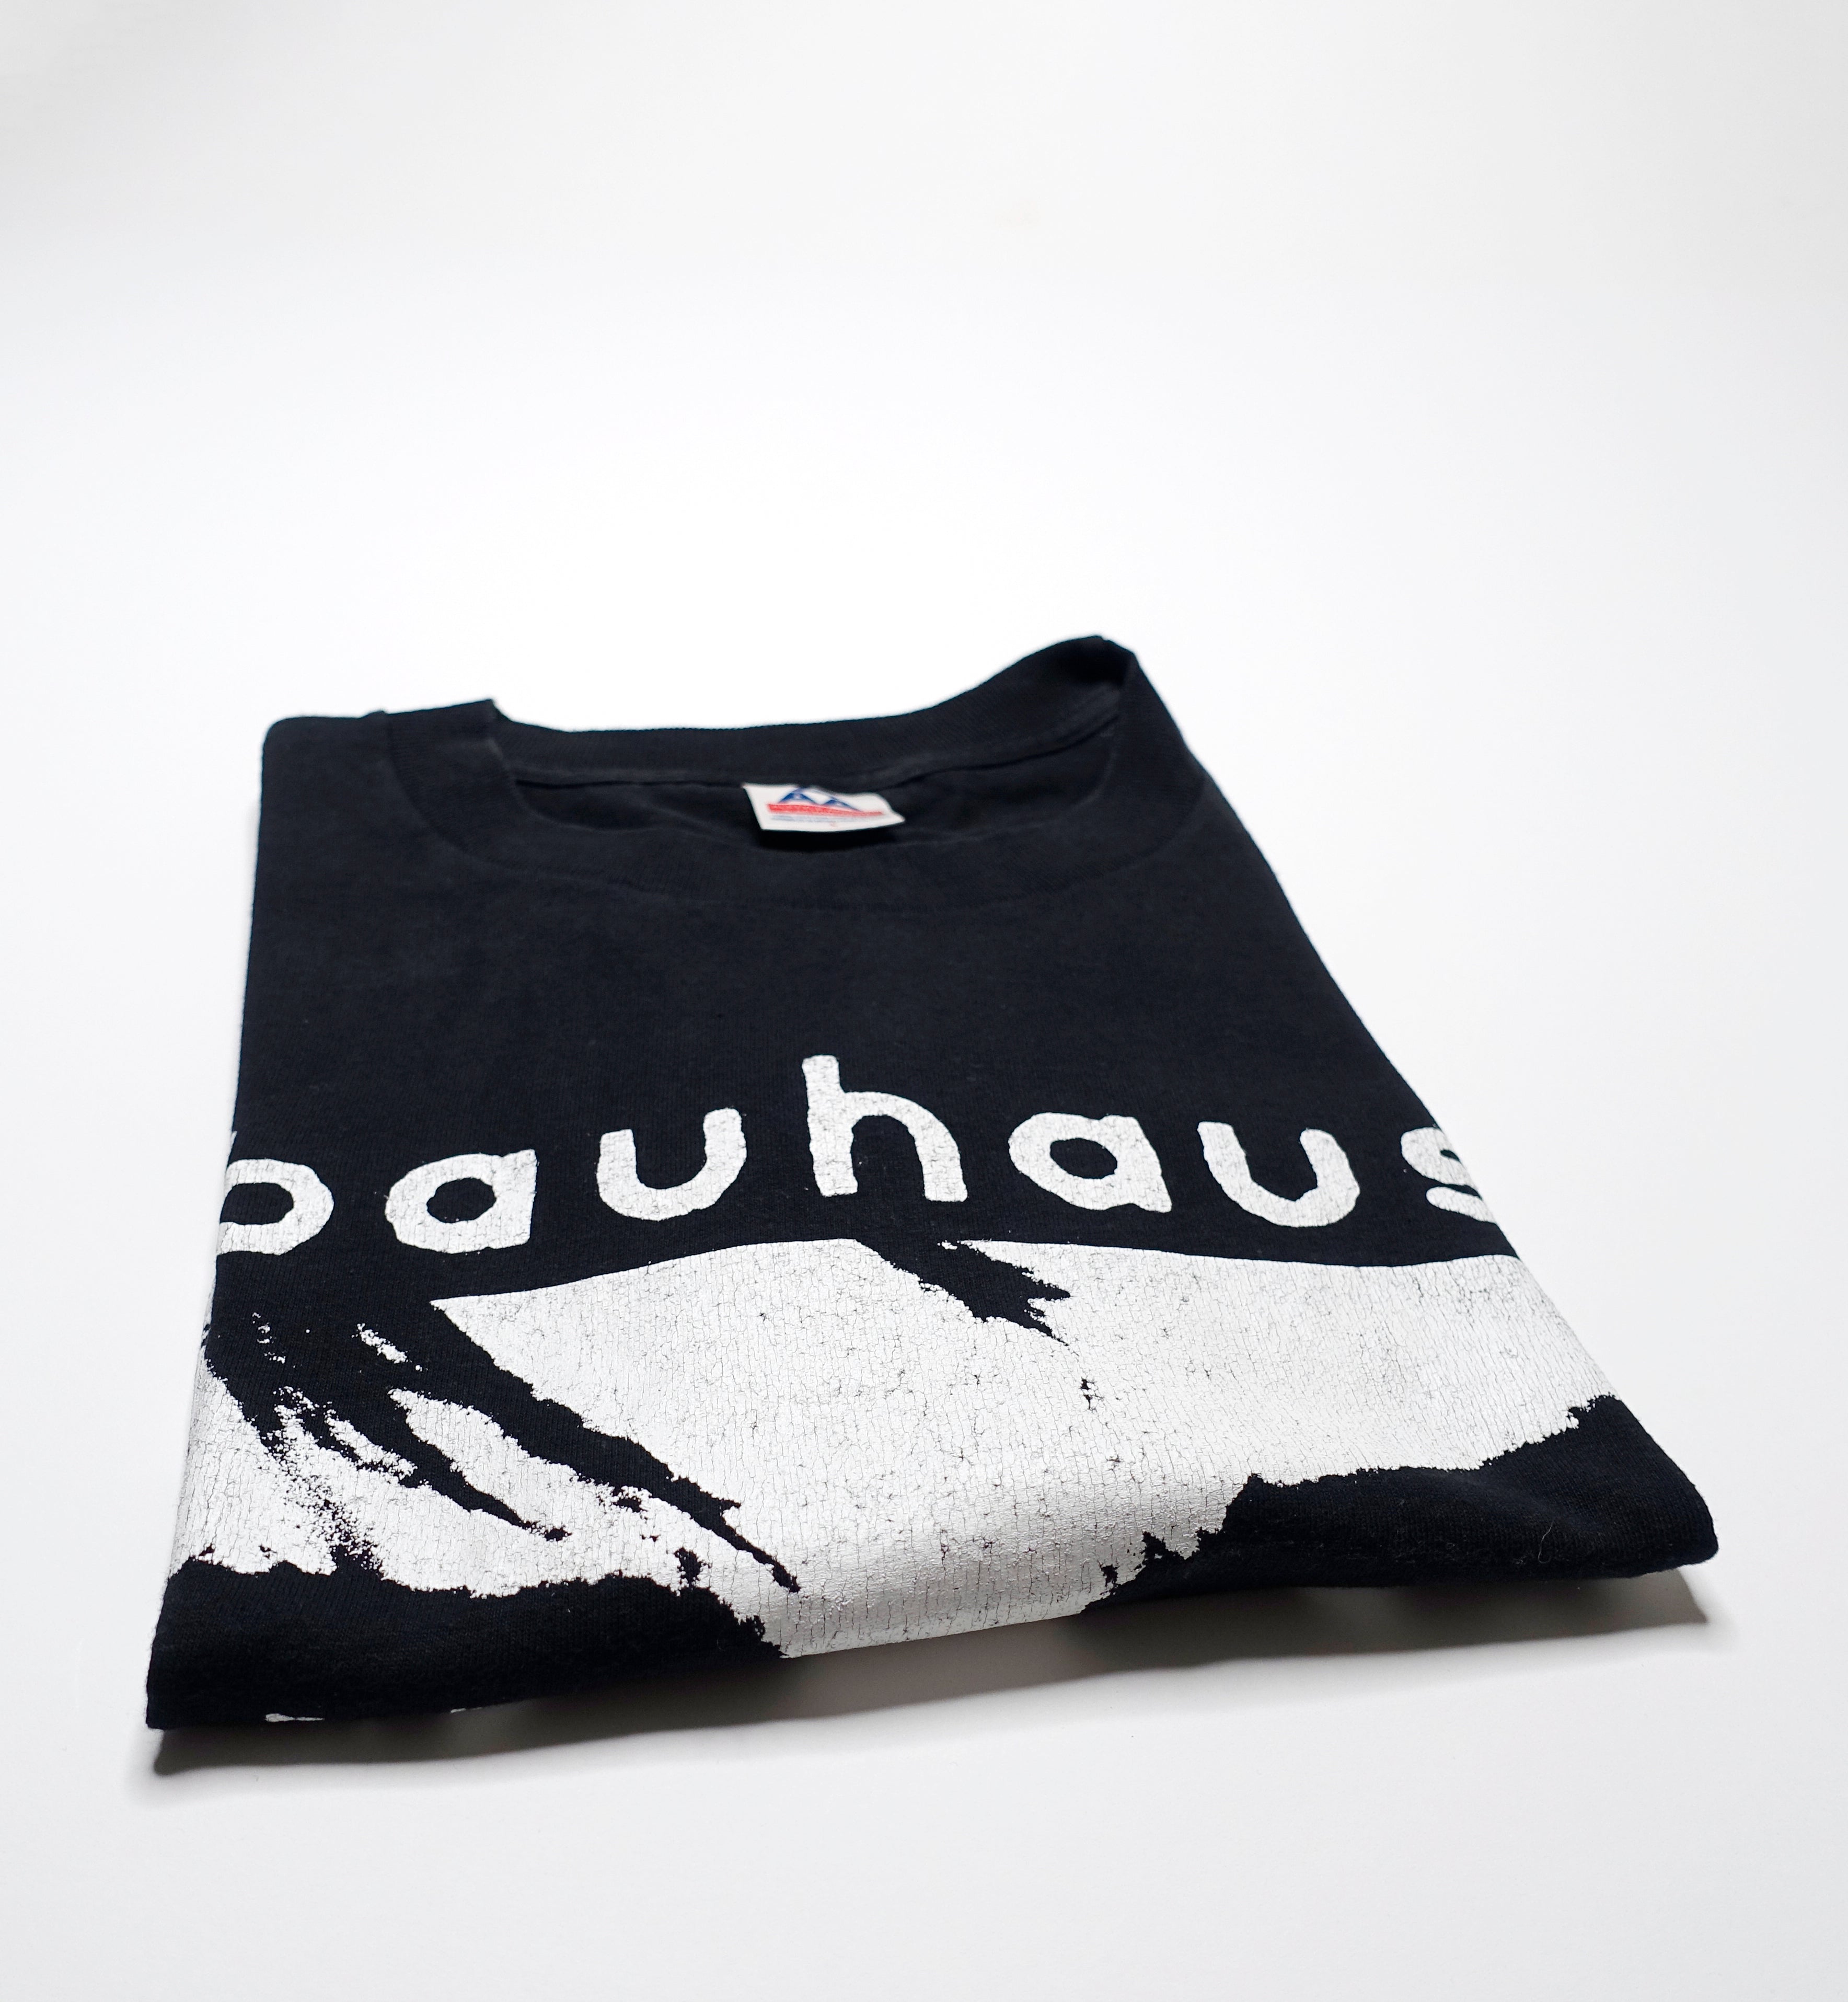 Bauhaus - Peter Murphy Face 90's Tour Shirt Size Large